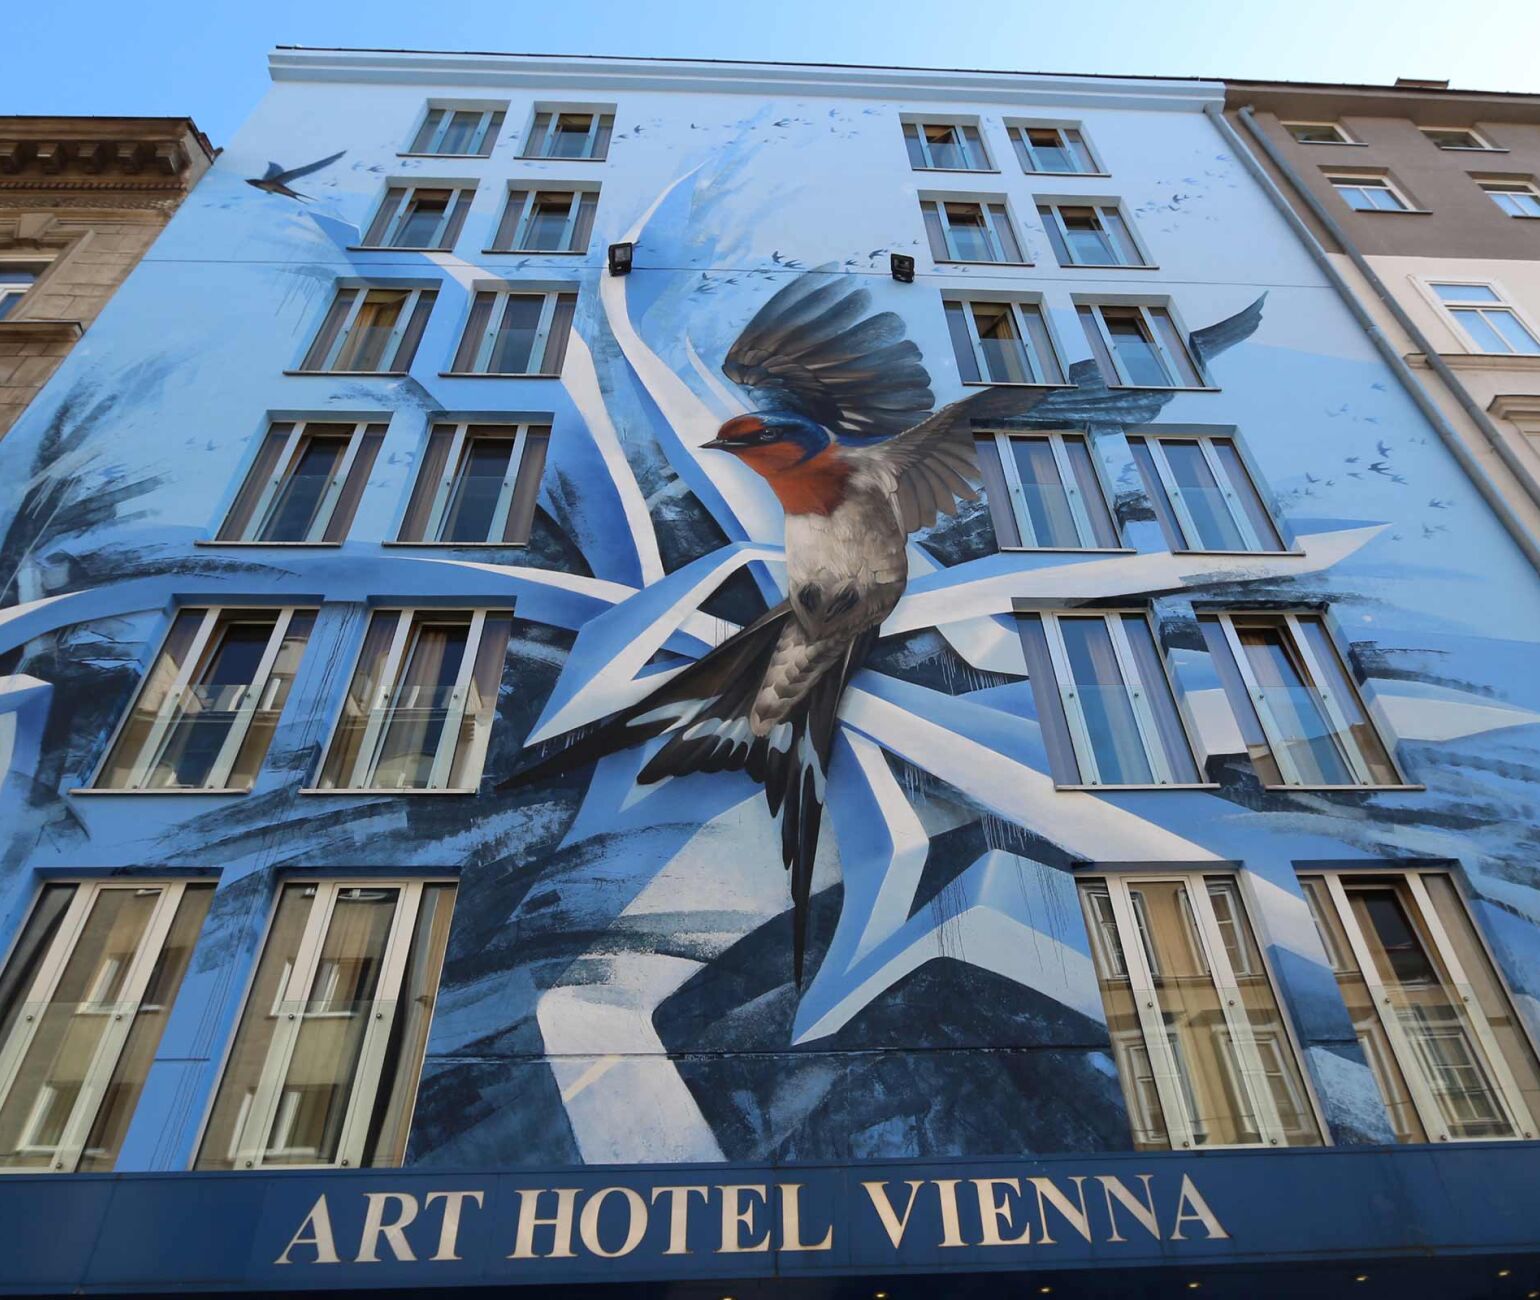 Das Art Hotel Vienna der 3SI Immogroup bekam eine kunstvolle Graffiti-Fassade